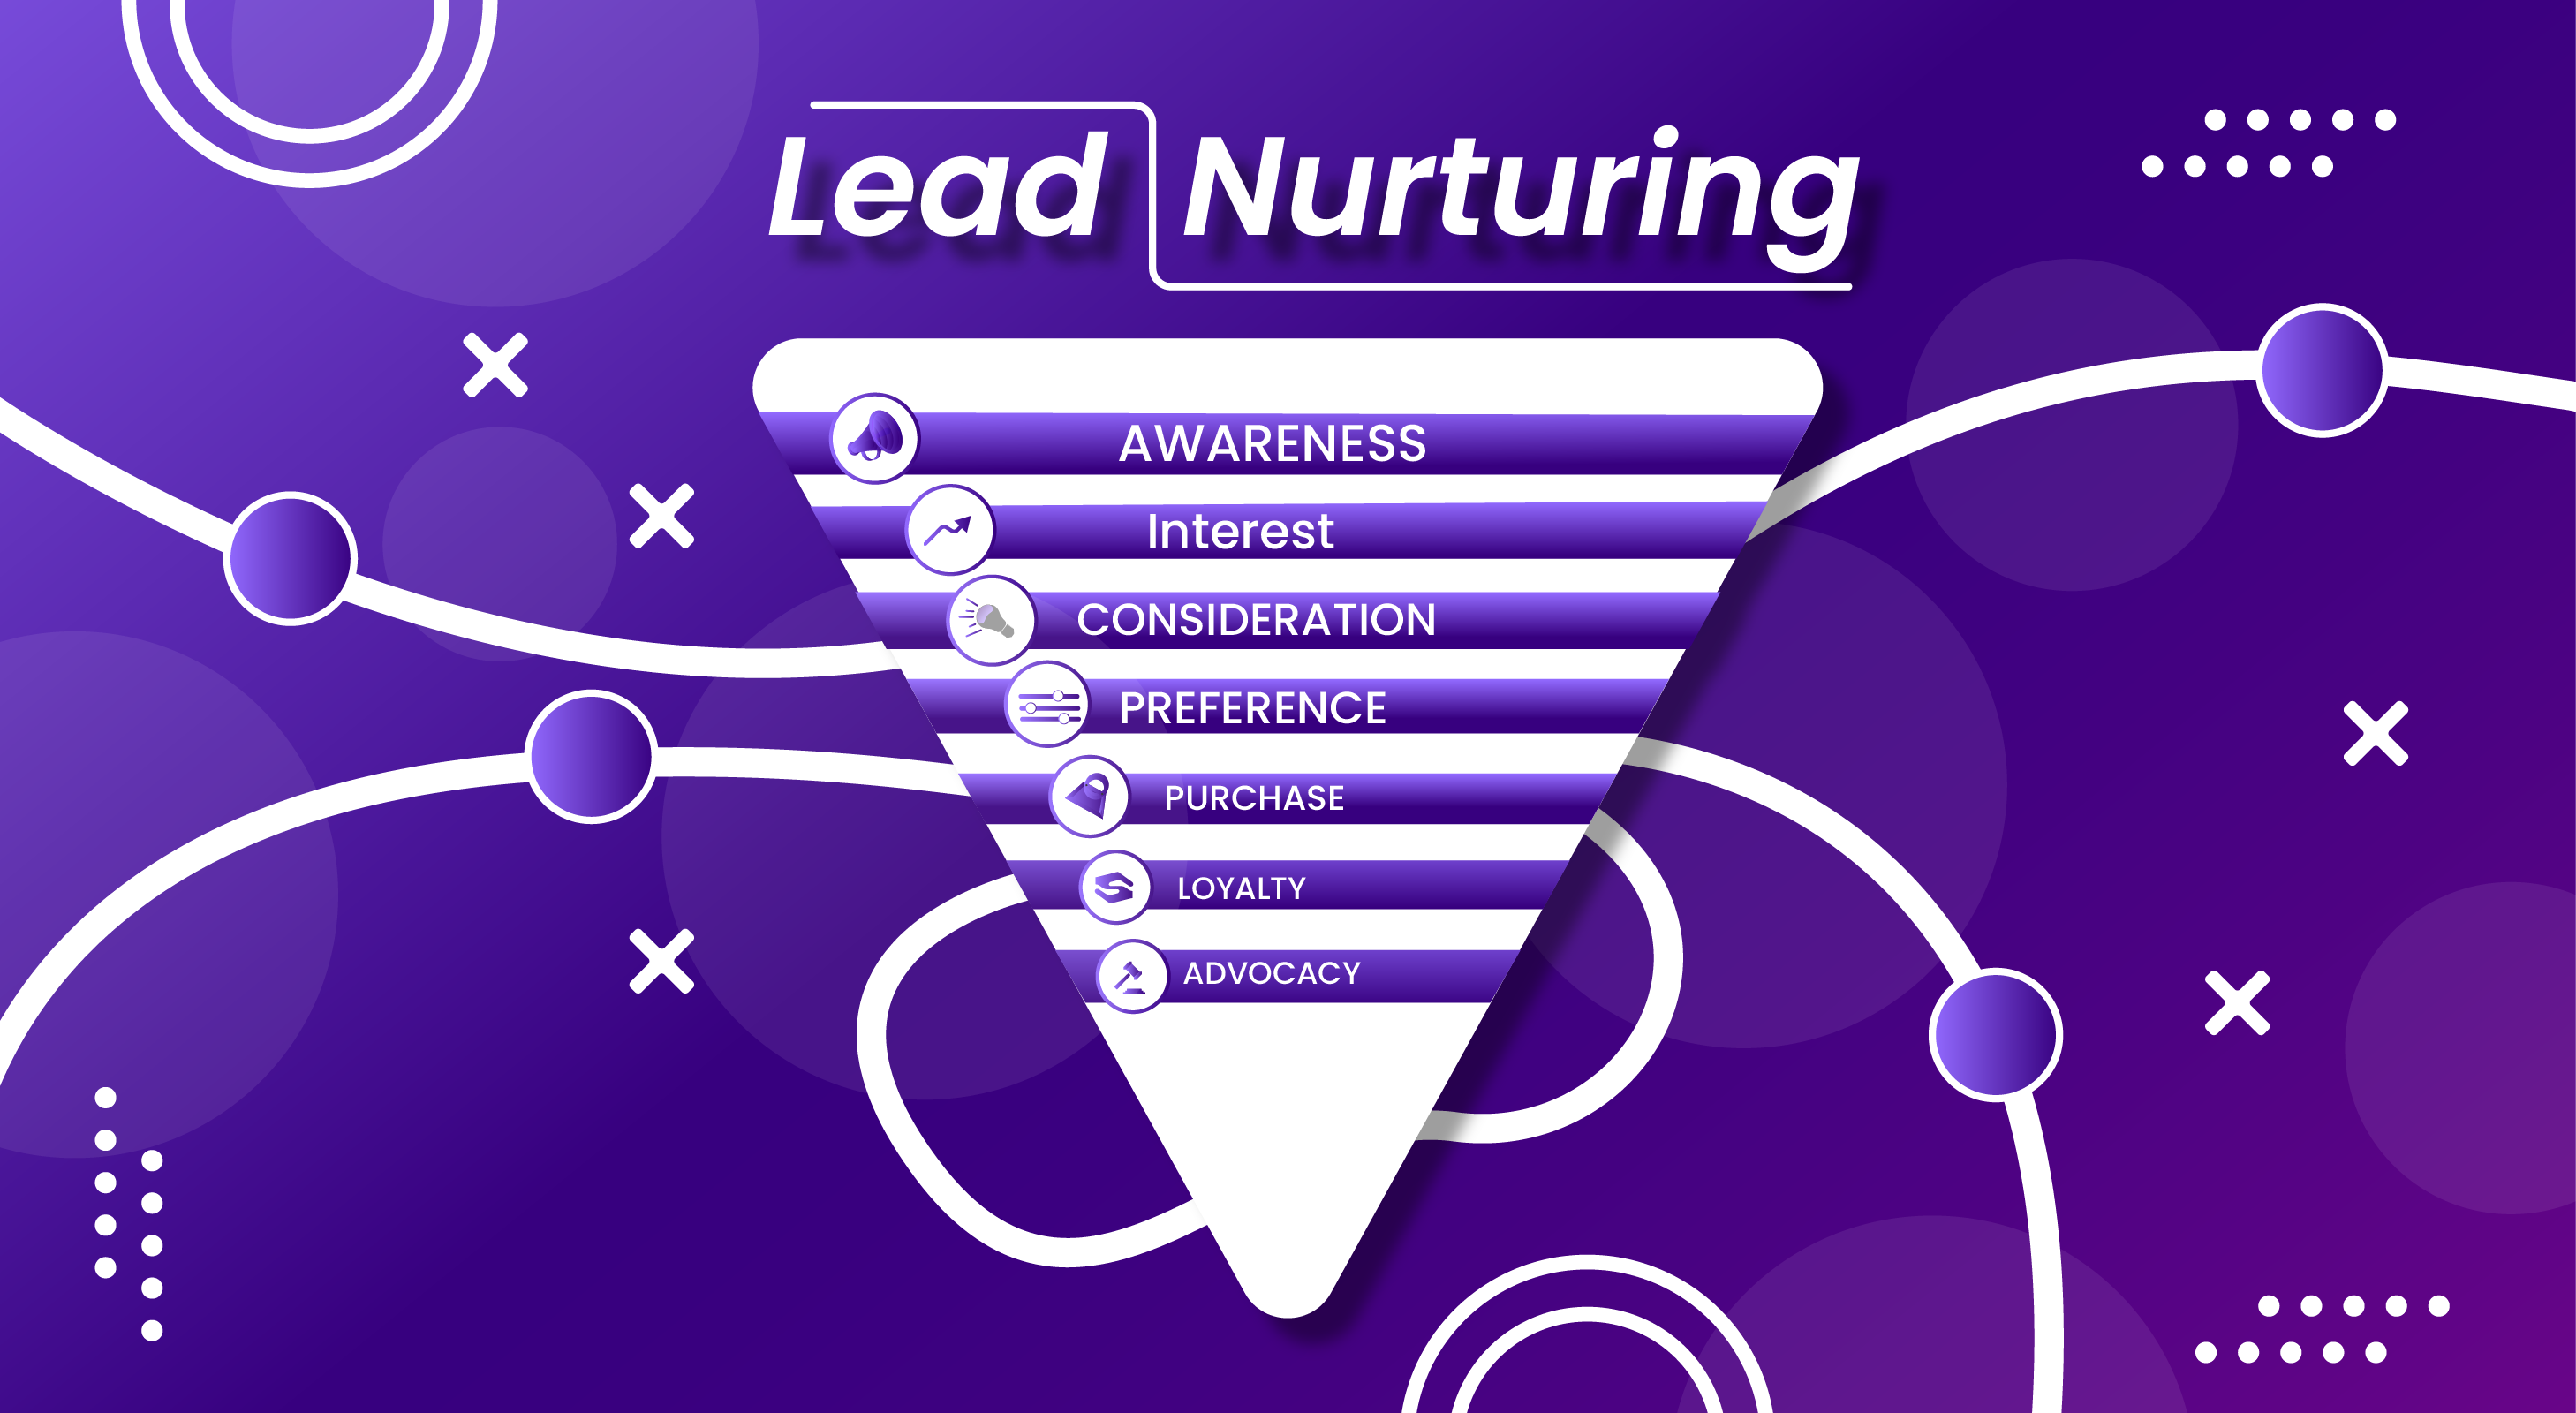 Lead Nuturing